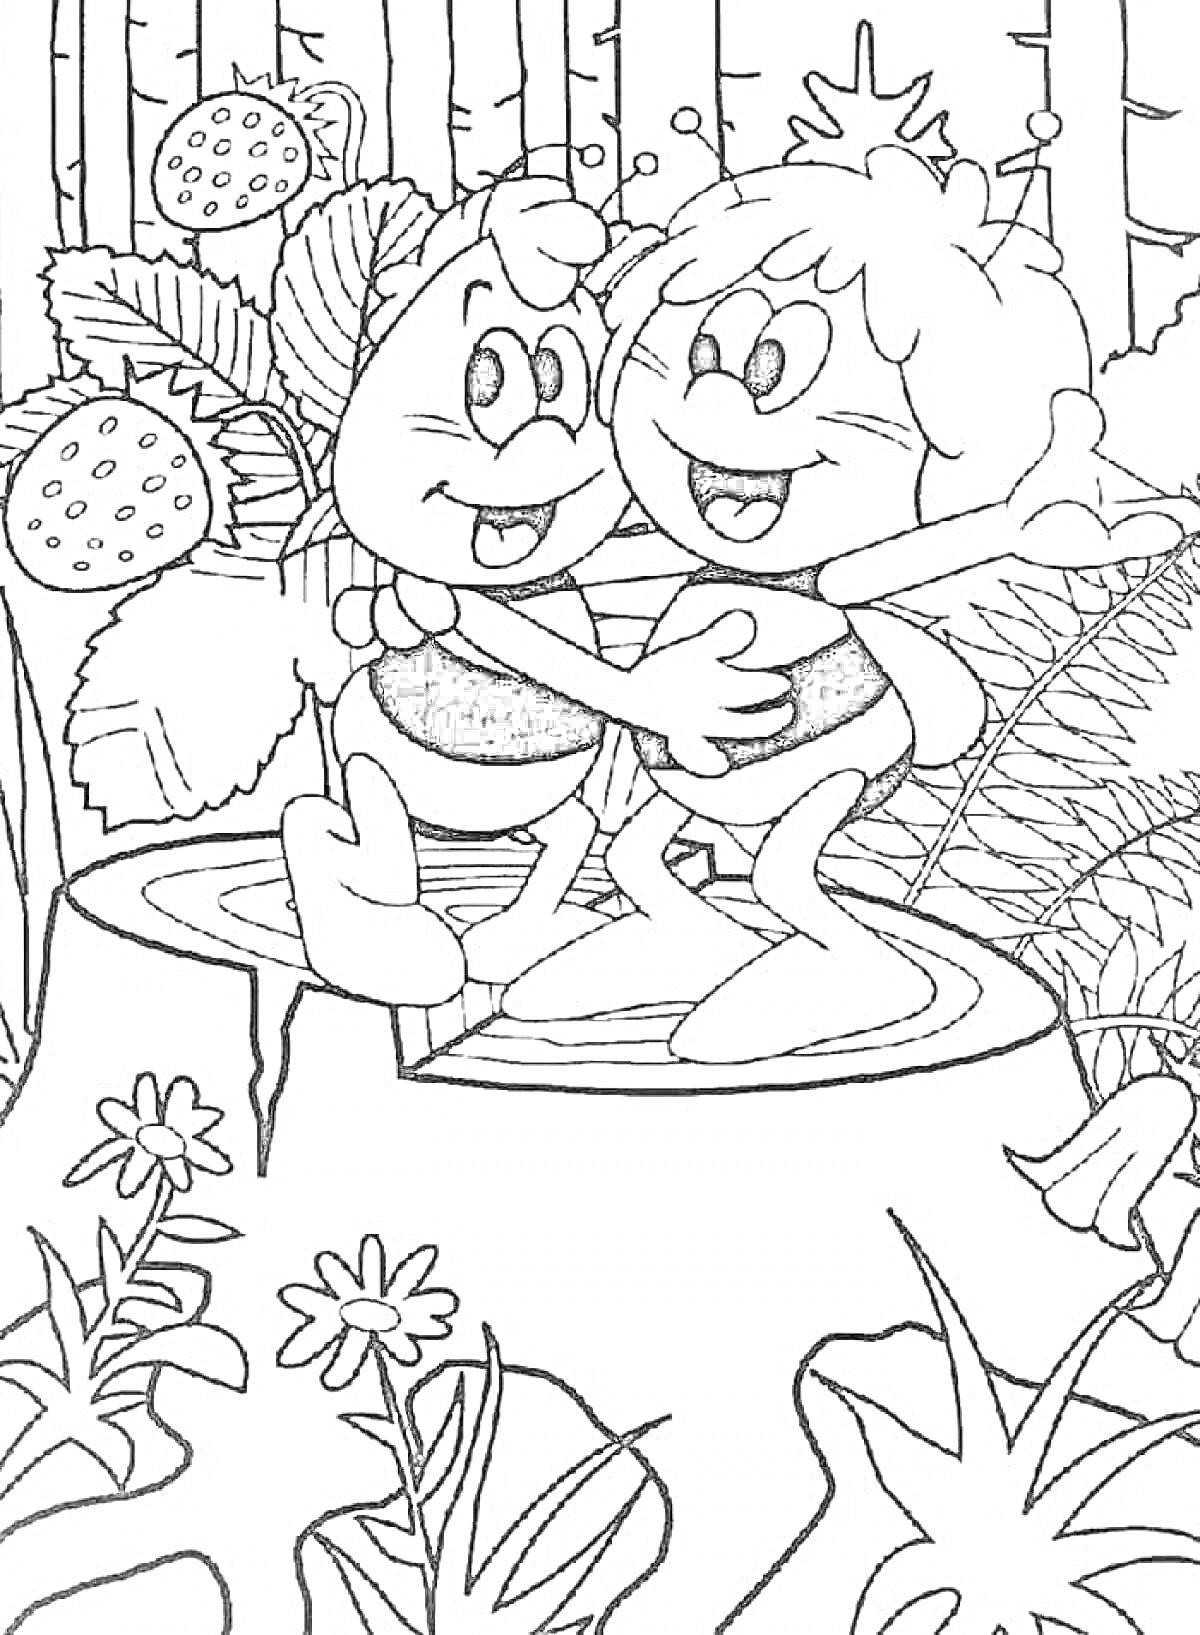 Раскраска Две улыбающиеся пчелы обнимаются на пеньке, окруженные растениями и цветами